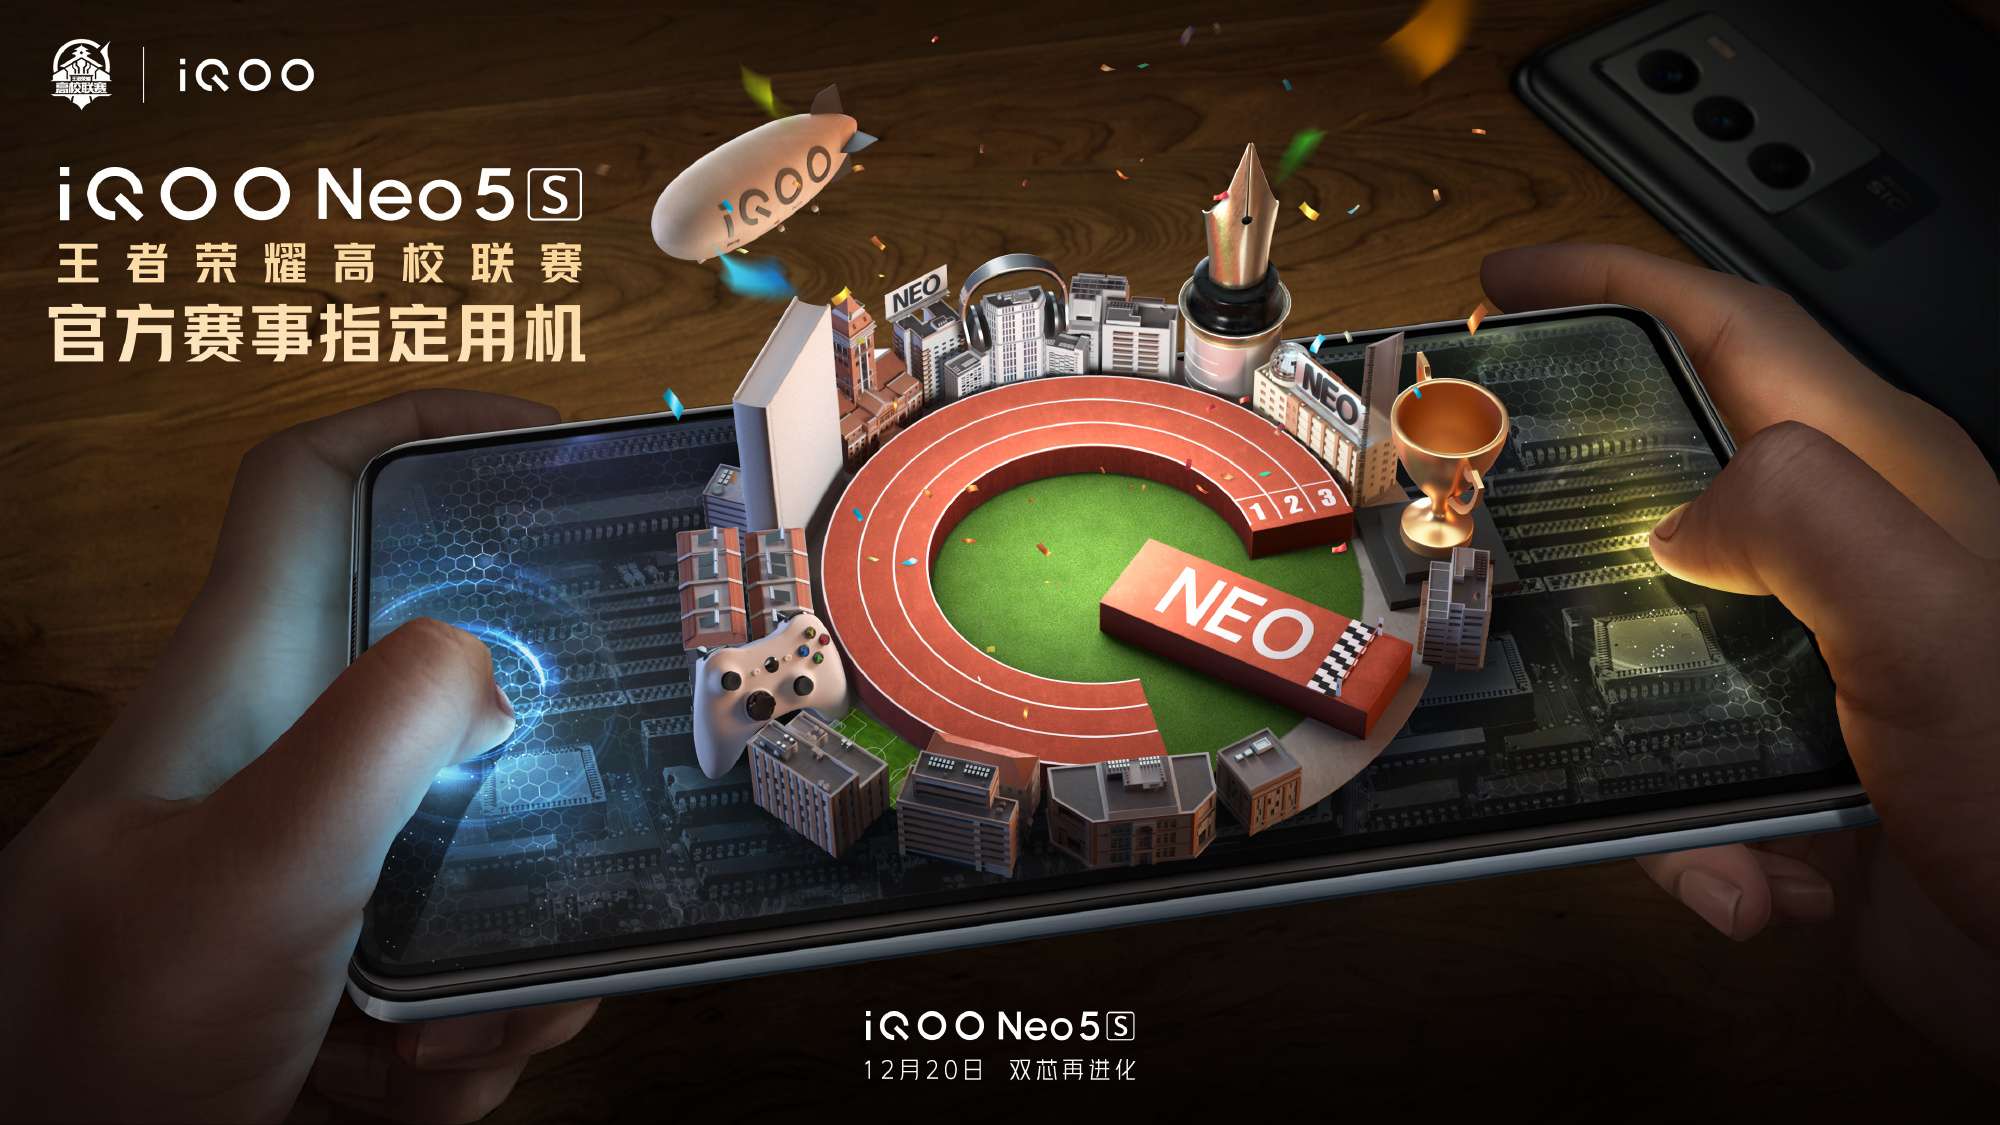 Oficialmente: iQOO Neo 5s con pantalla AMOLED, chip Snapdragon 888 y carga rápida de 66W se presentará el 20 de diciembre